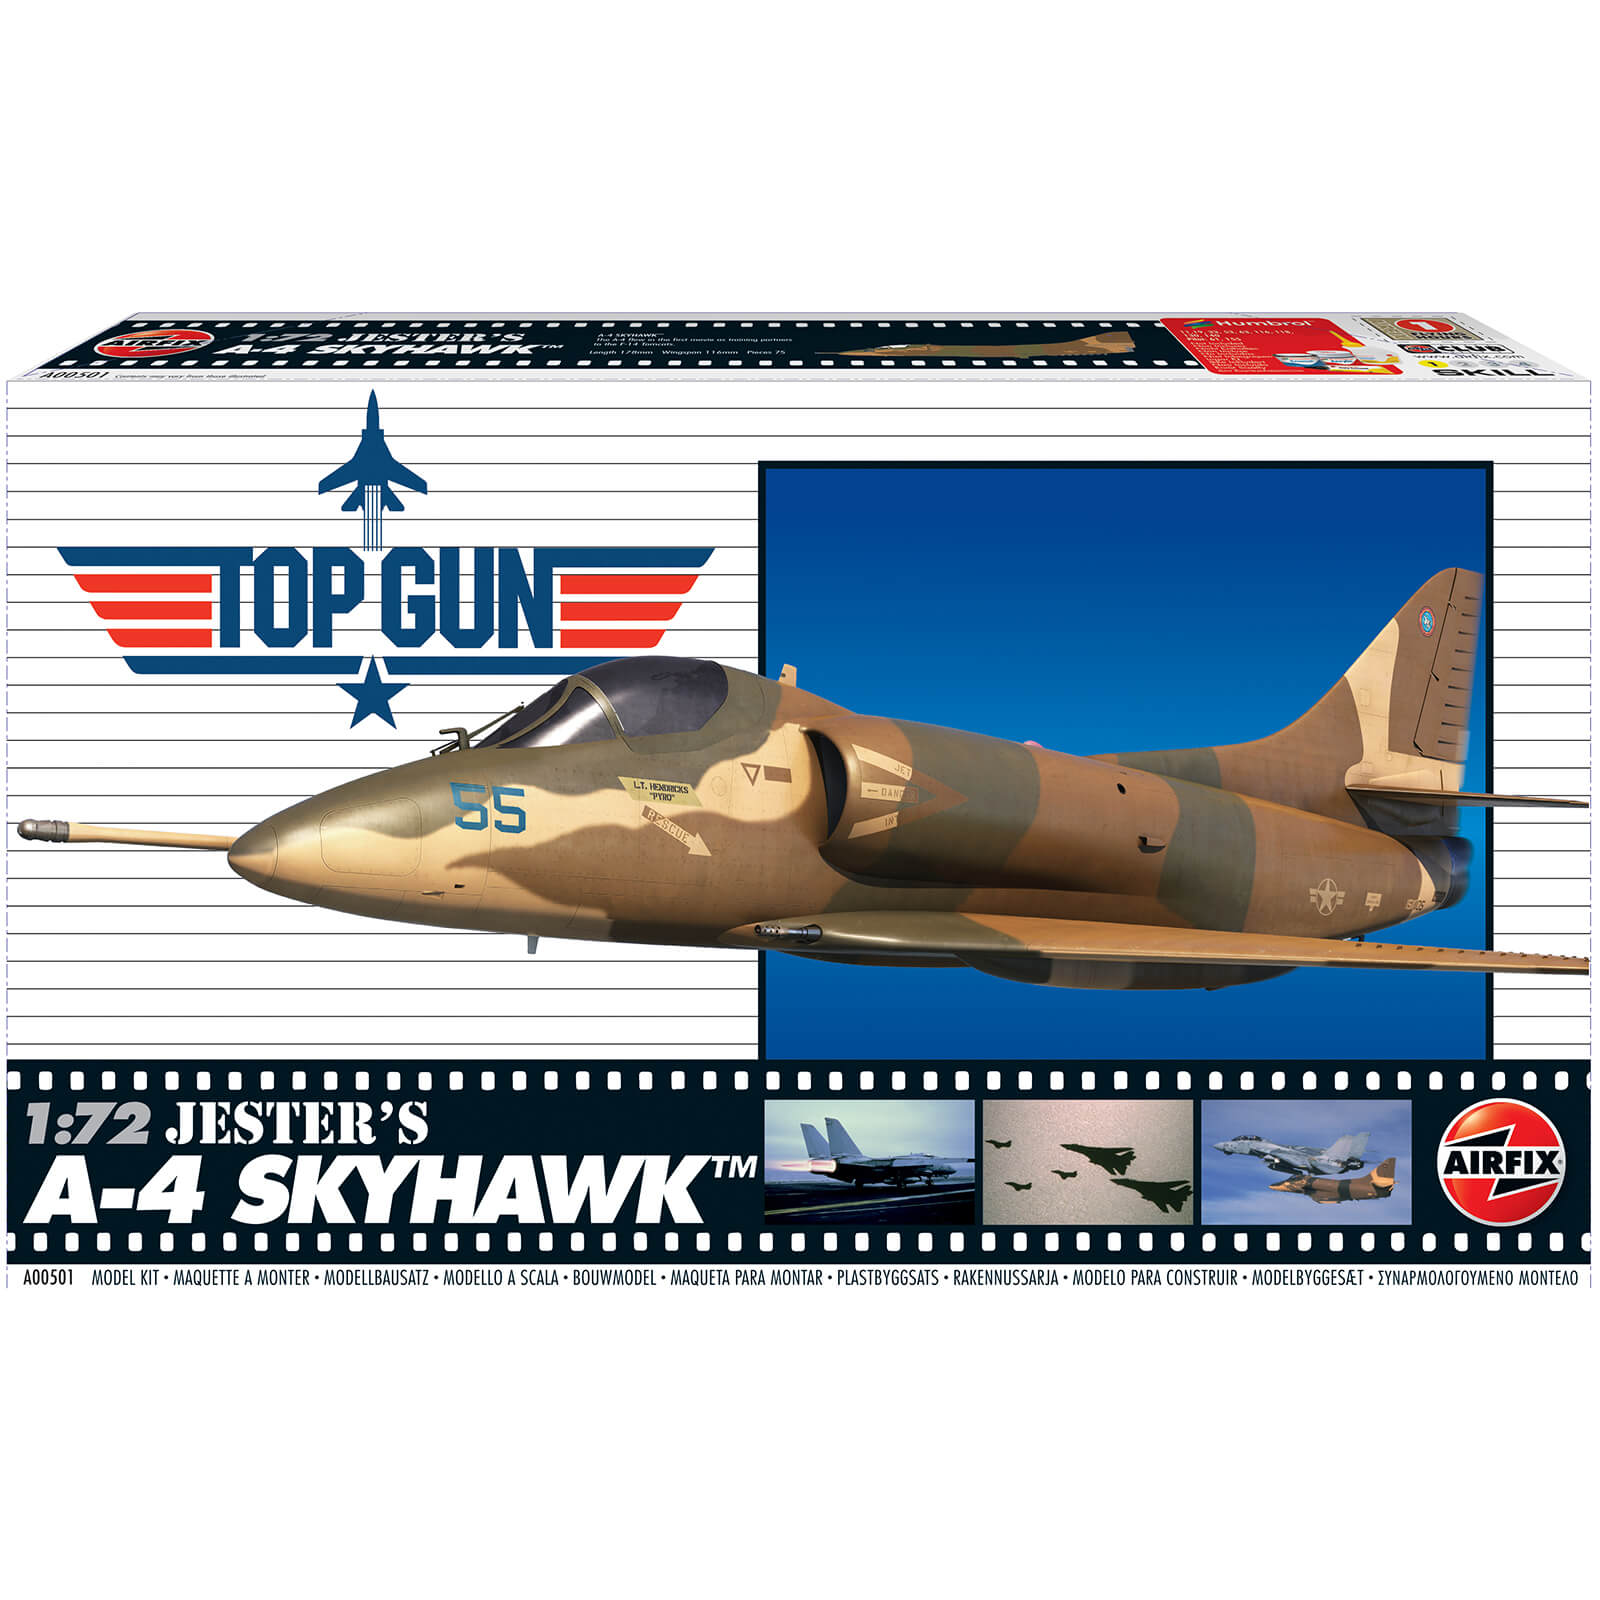 Top Gun Jester's A-4 Skyhawk Plastic Model Kit - Scale 1:72